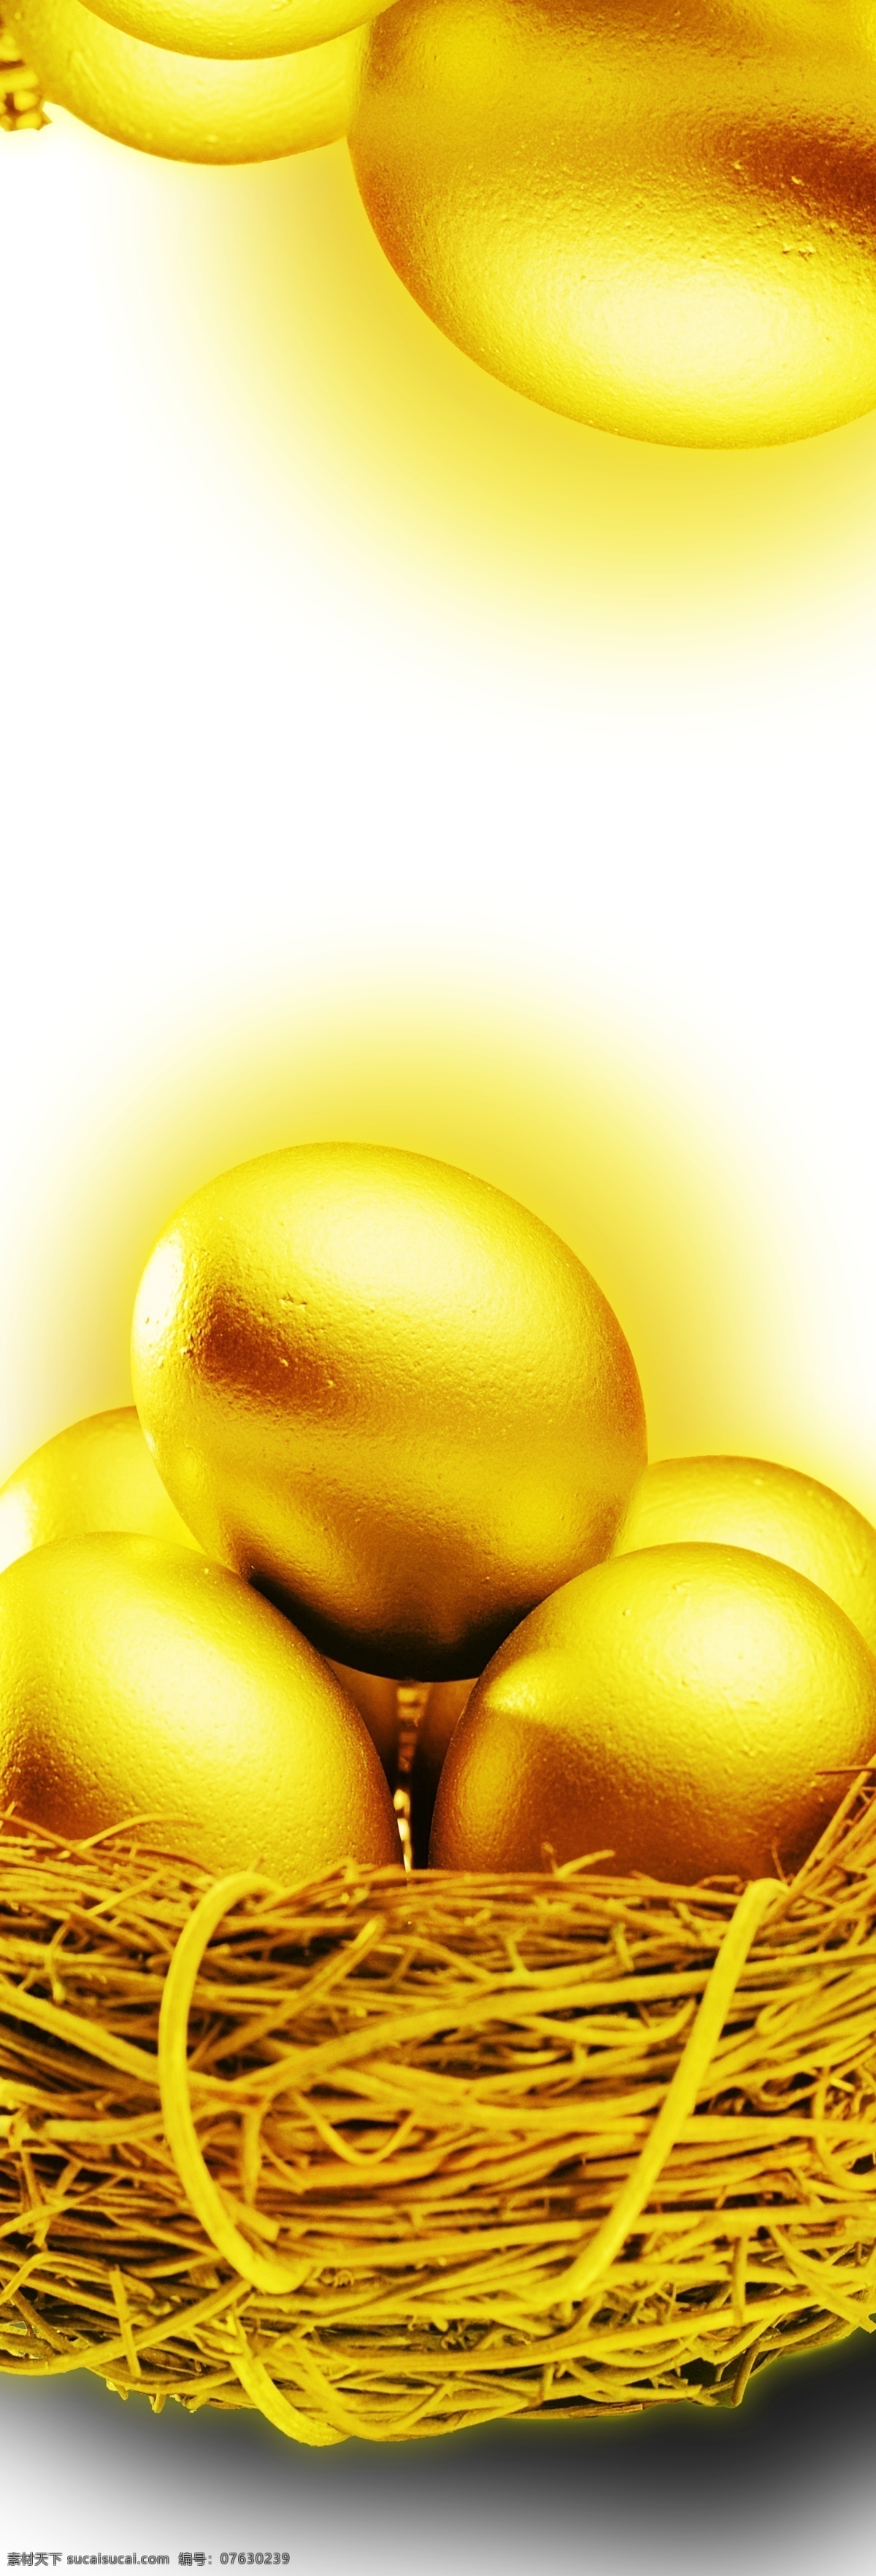 金 蛋 财富 金蛋 鸟巢 移门素材 金色的巢 黄金蛋 黄金鸟巢 平开门图 单扇移门图 psd源文件